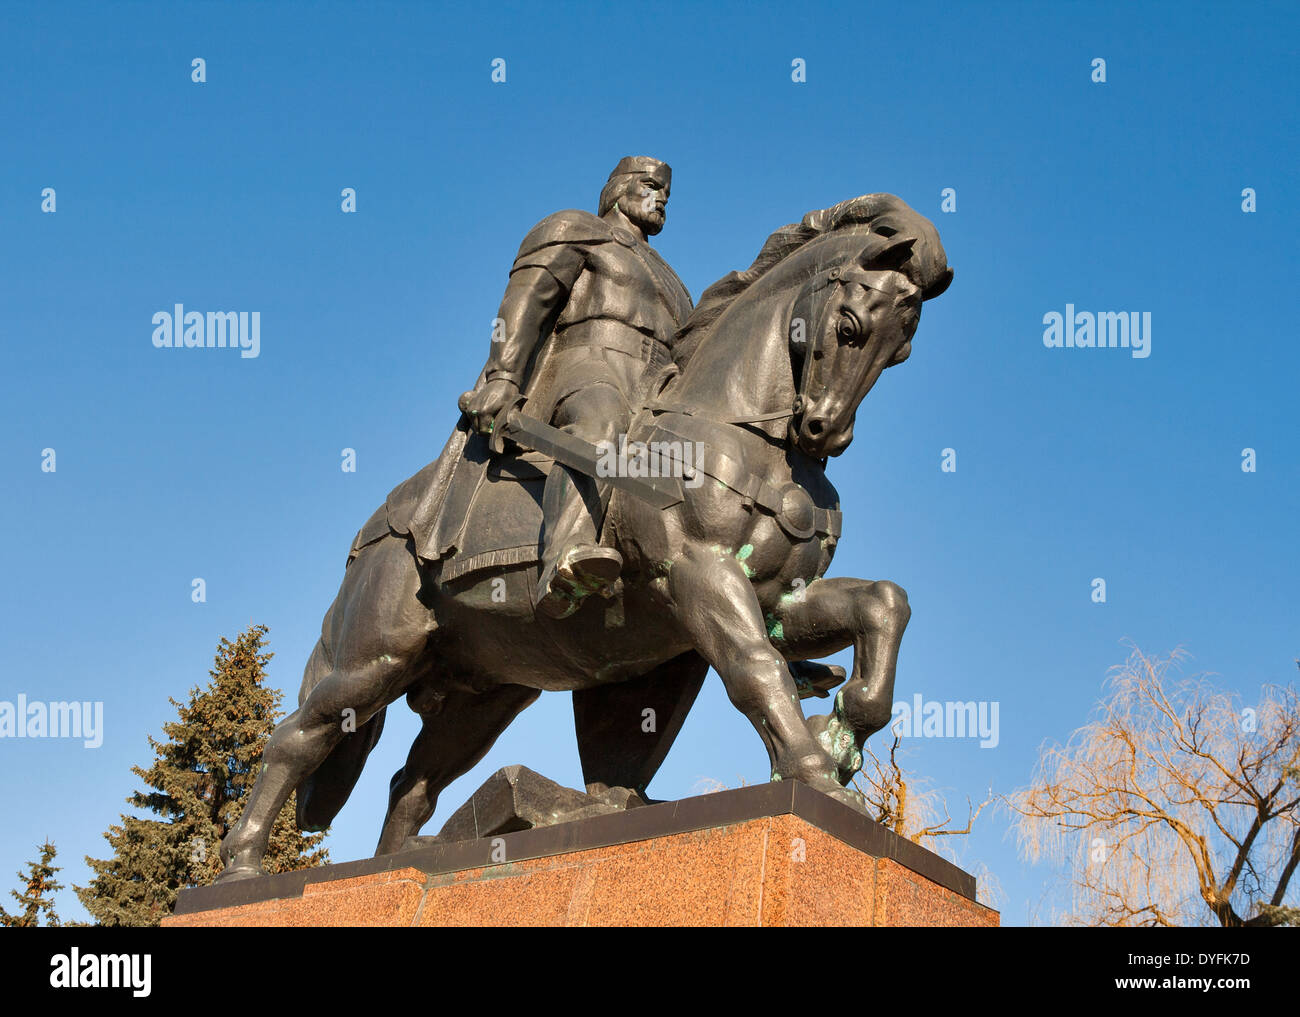 Monument à king Danylo de Halych (Daniel de la Galice), dans la région de Ternopil, Ukraine occidentale. Banque D'Images